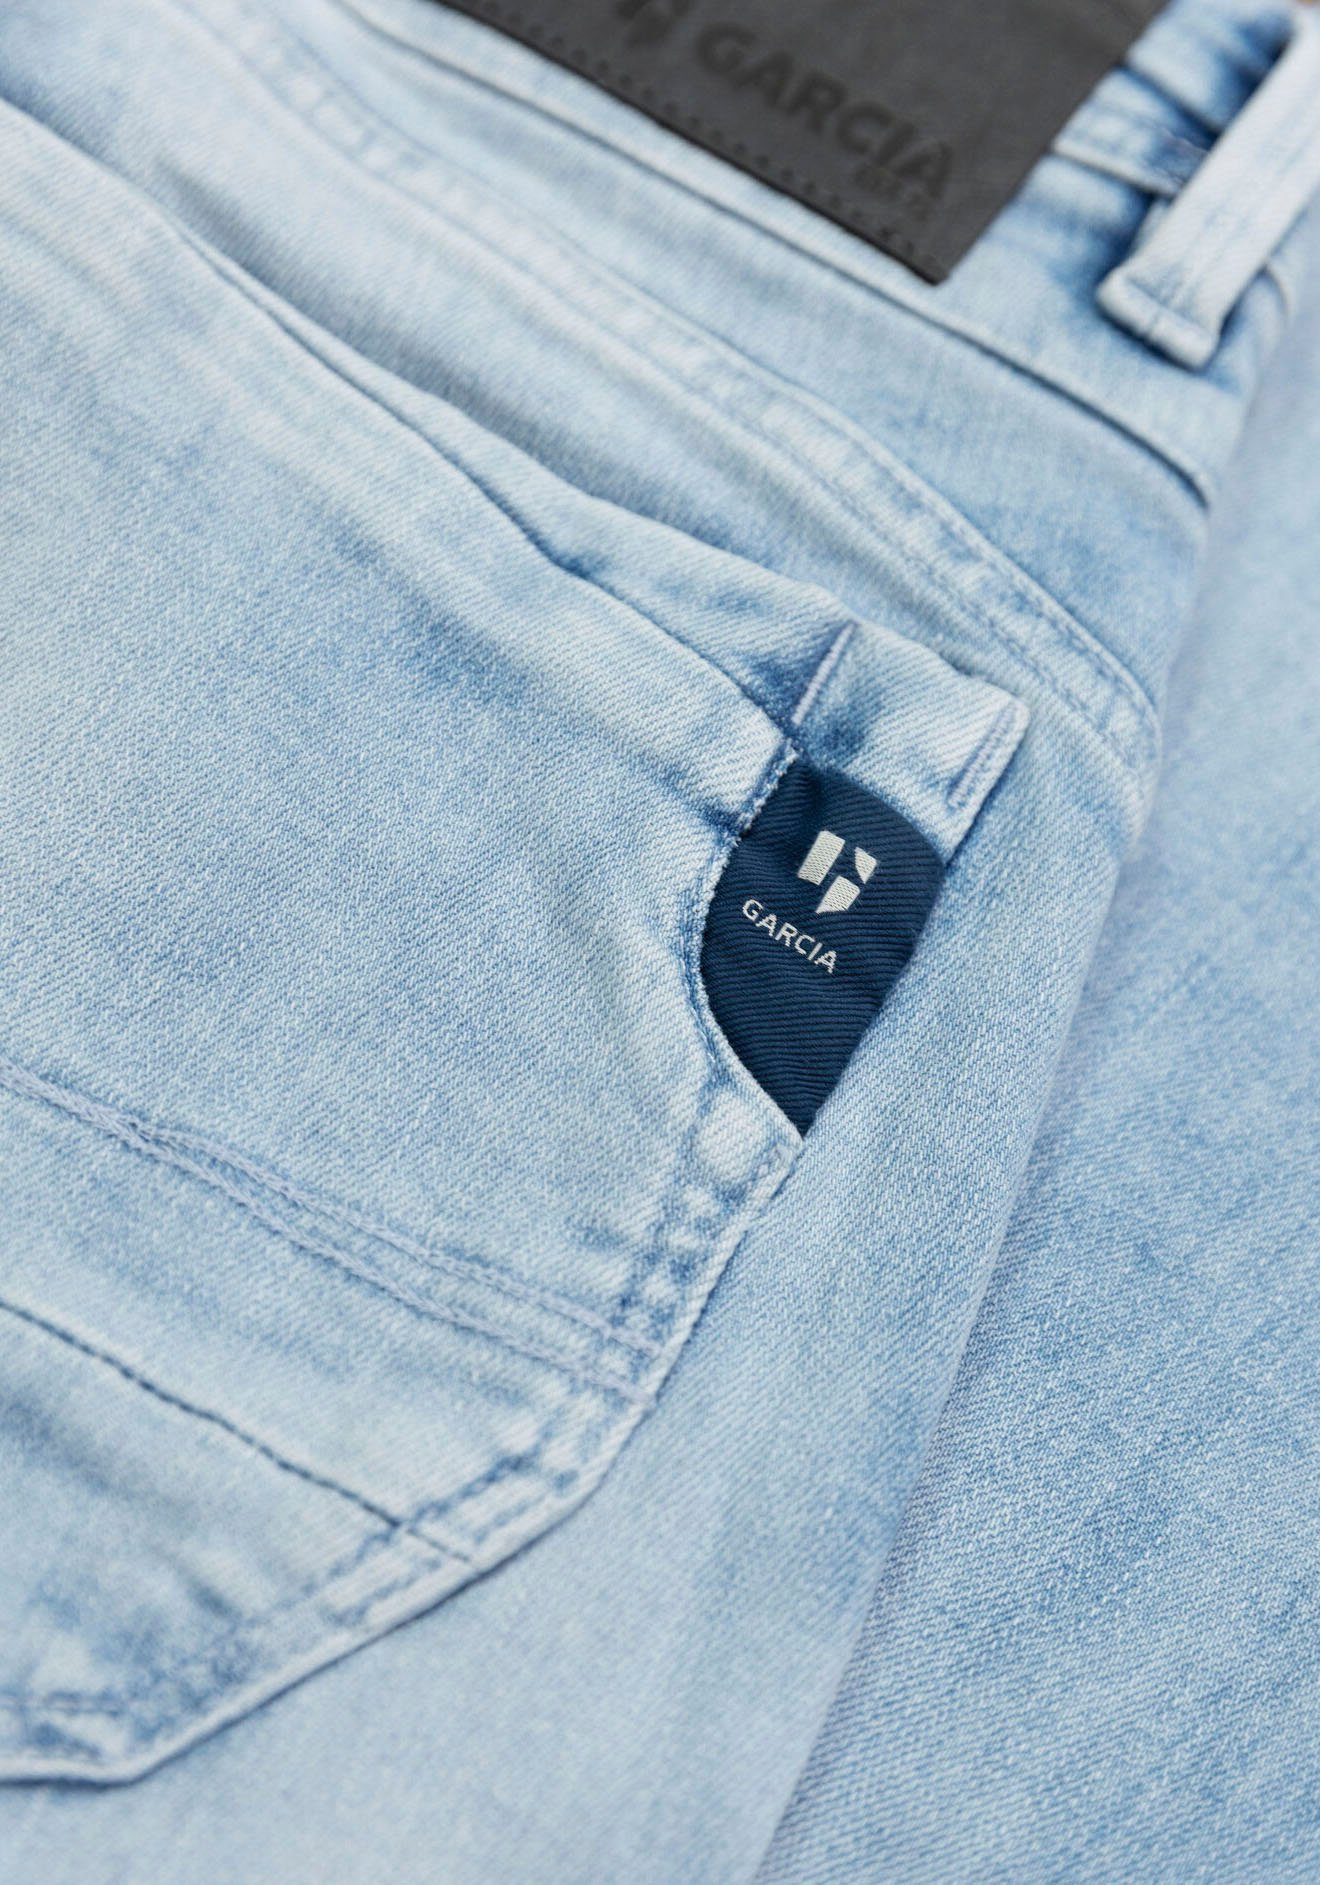 Garcia 5-Pocket-Jeans Rocko in verschiedenen bleached Waschungen